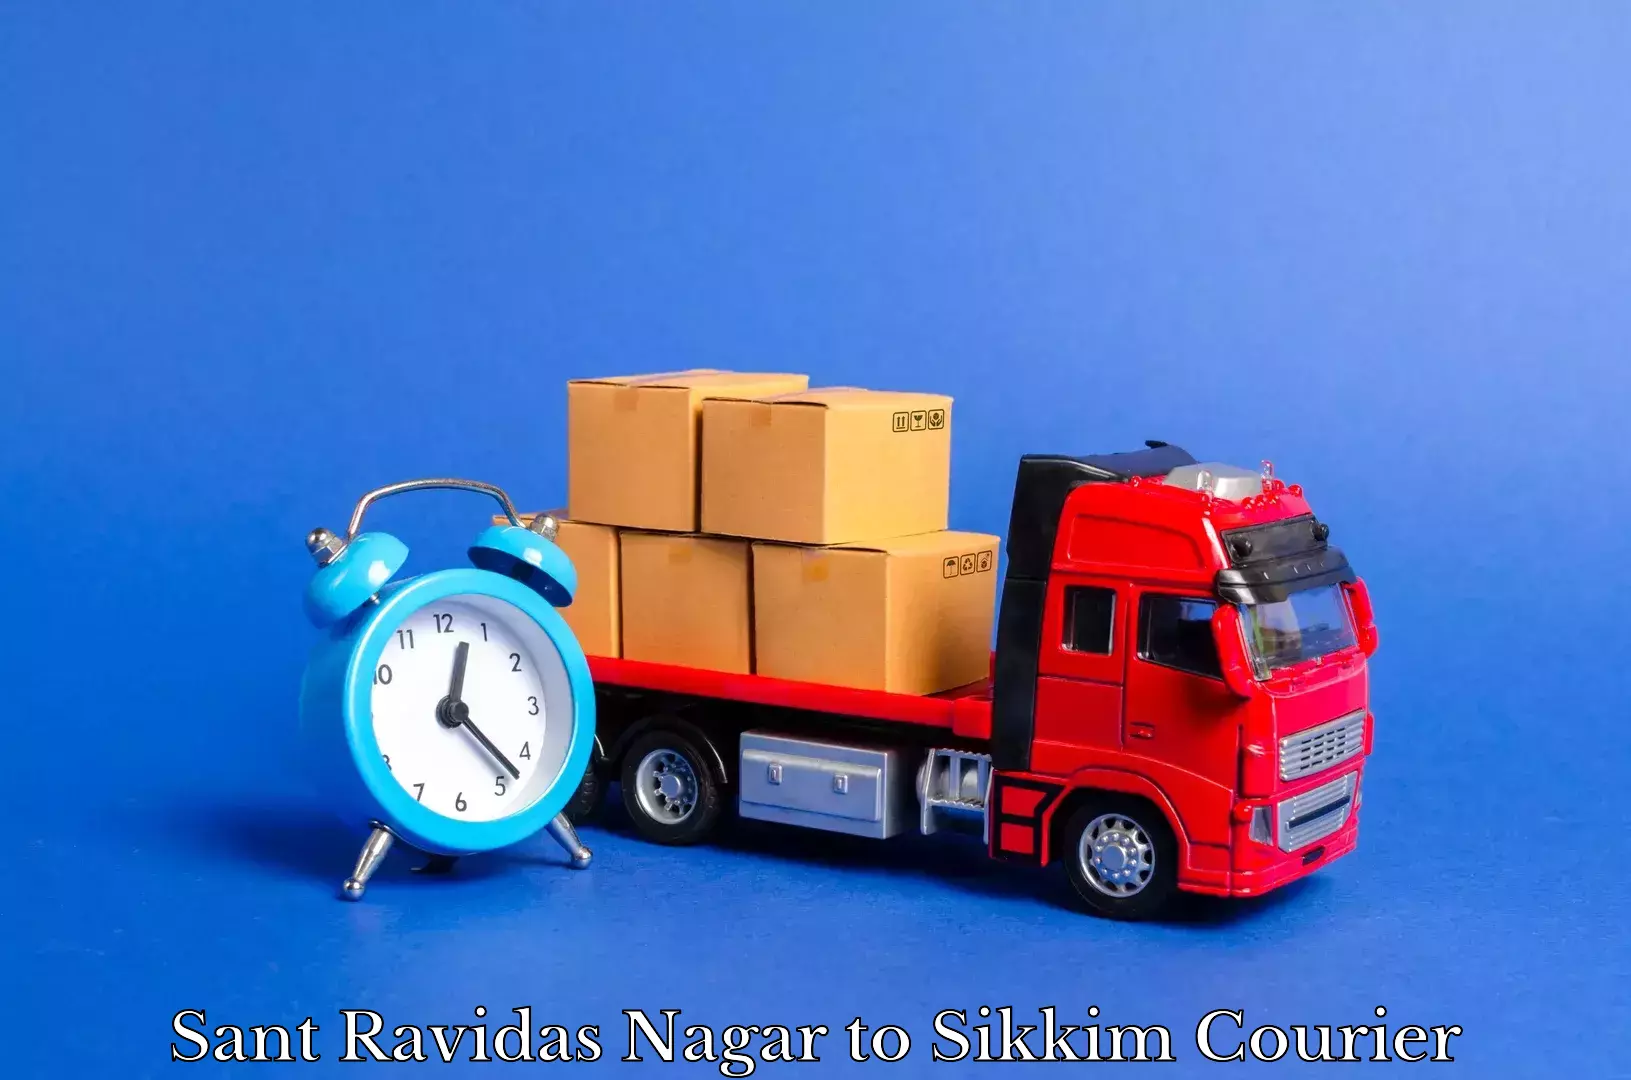 Home moving experts Sant Ravidas Nagar to Jorethang